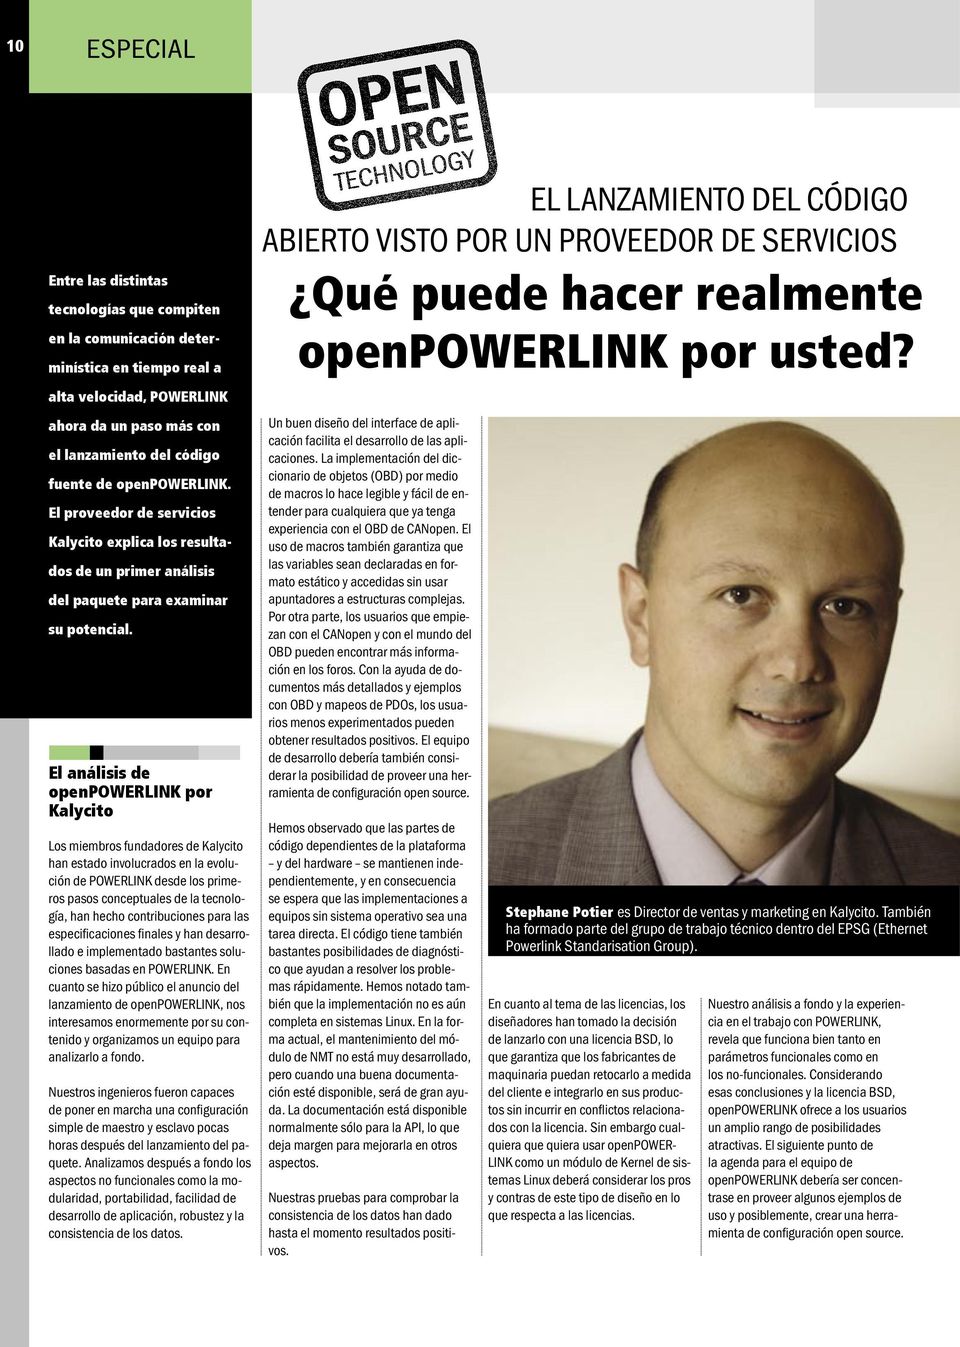 El análisis de openpowerlink por Kalycito Los miembros fundadores de Kalycito han estado involucrados en la evolución de POWERLINK desde los primeros pasos conceptuales de la tecnología, han hecho